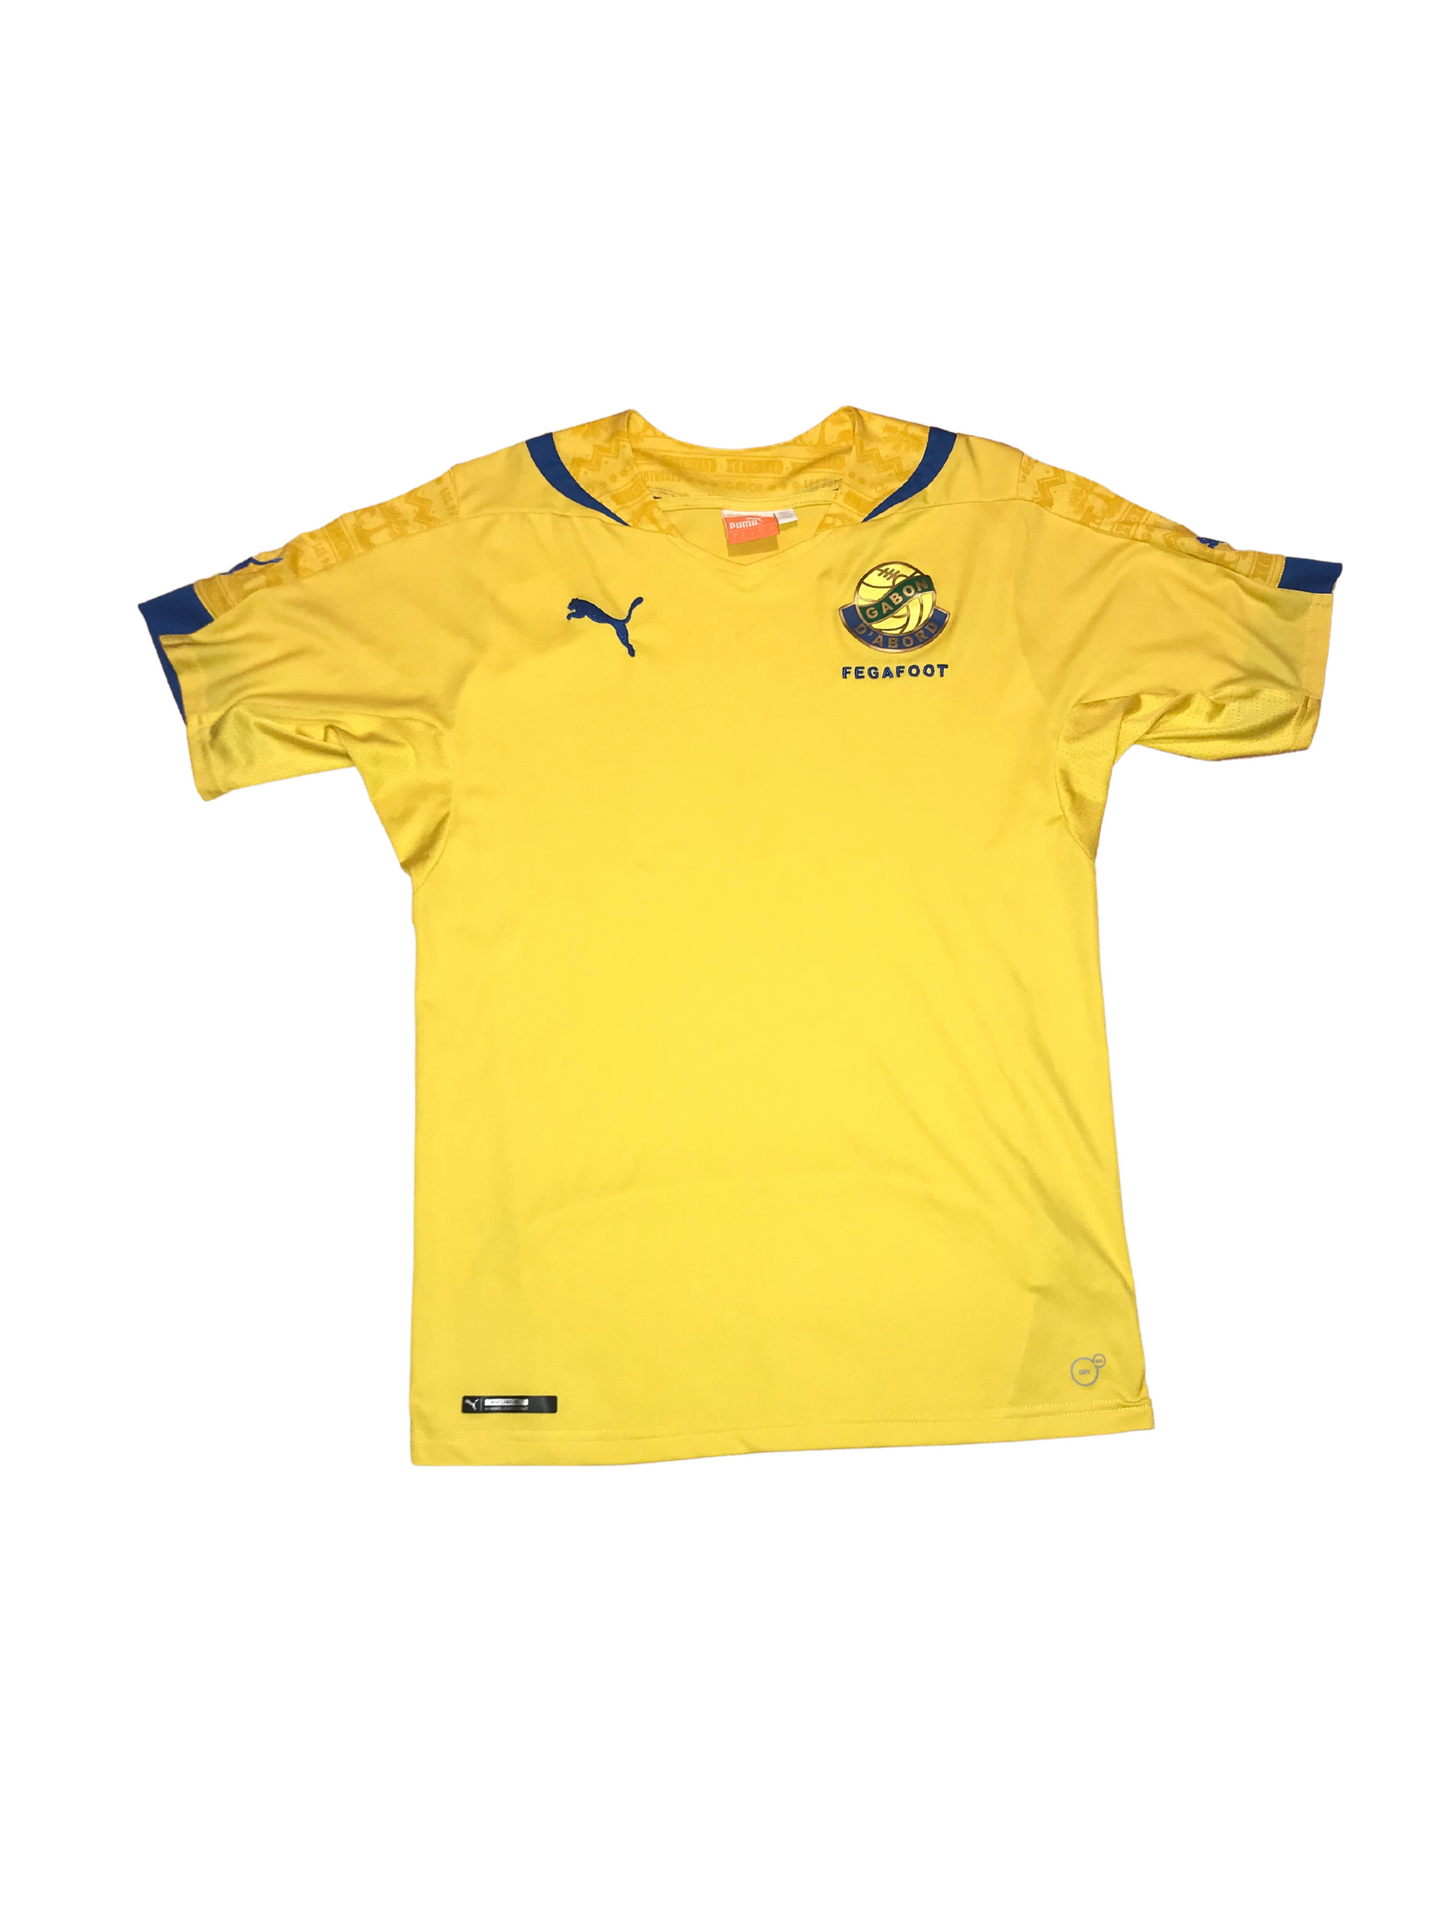 Club Nacional Asuncion Home camisa de futebol 2014 - 2015.